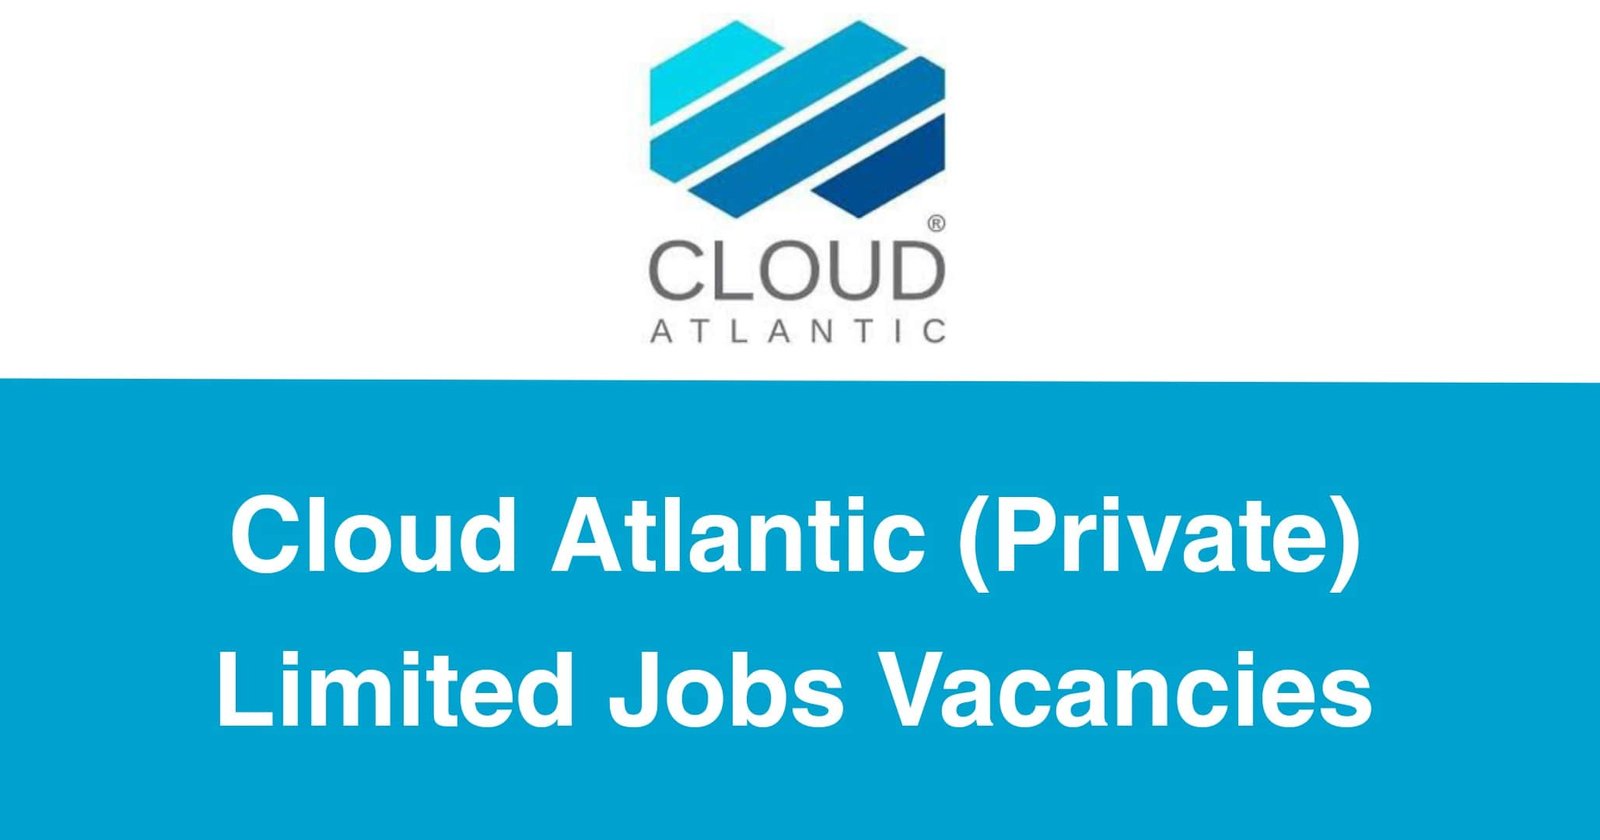 Cloud Atlantic (Private) Limited Jobs Vacancies